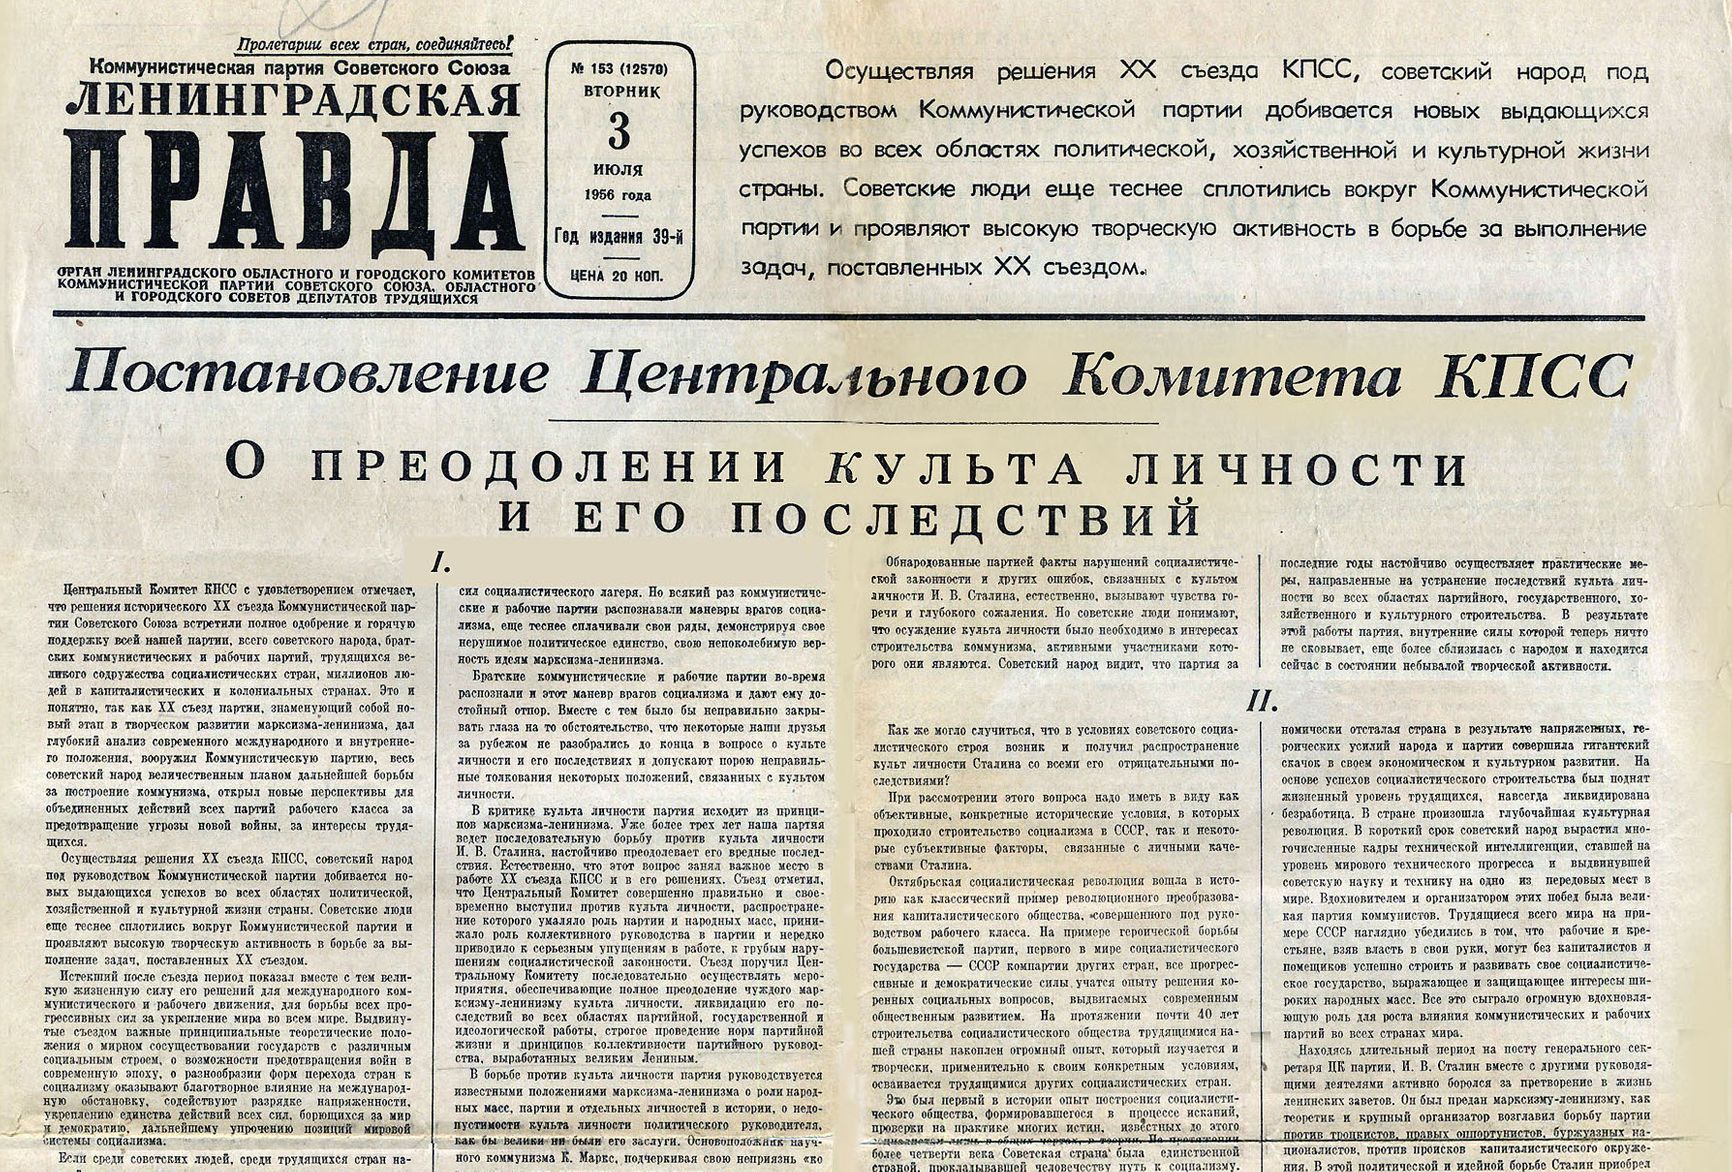 Смягченная версия доклада в виде постановления Президиума ЦК КПСС «О преодолении культа личности и его последствий» была опубликована в печати только летом 1956 года